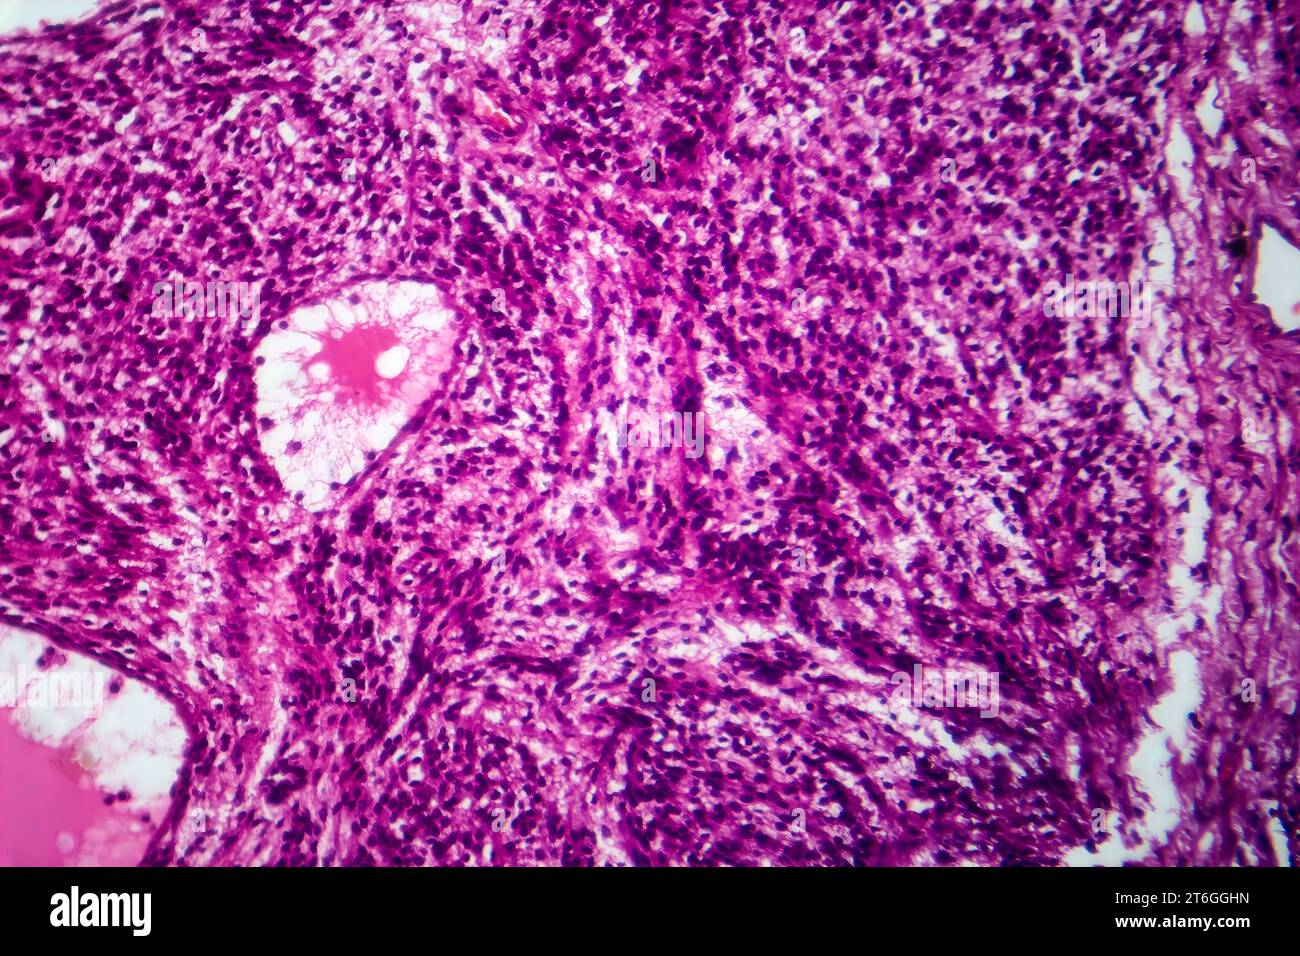 Fotomicrografia del fibrosarcoma, che rivela fibroblasti maligni e tessuto connettivo ricco di collagene, caratteristica del cancro aggressivo dei tessuti molli. Foto Stock